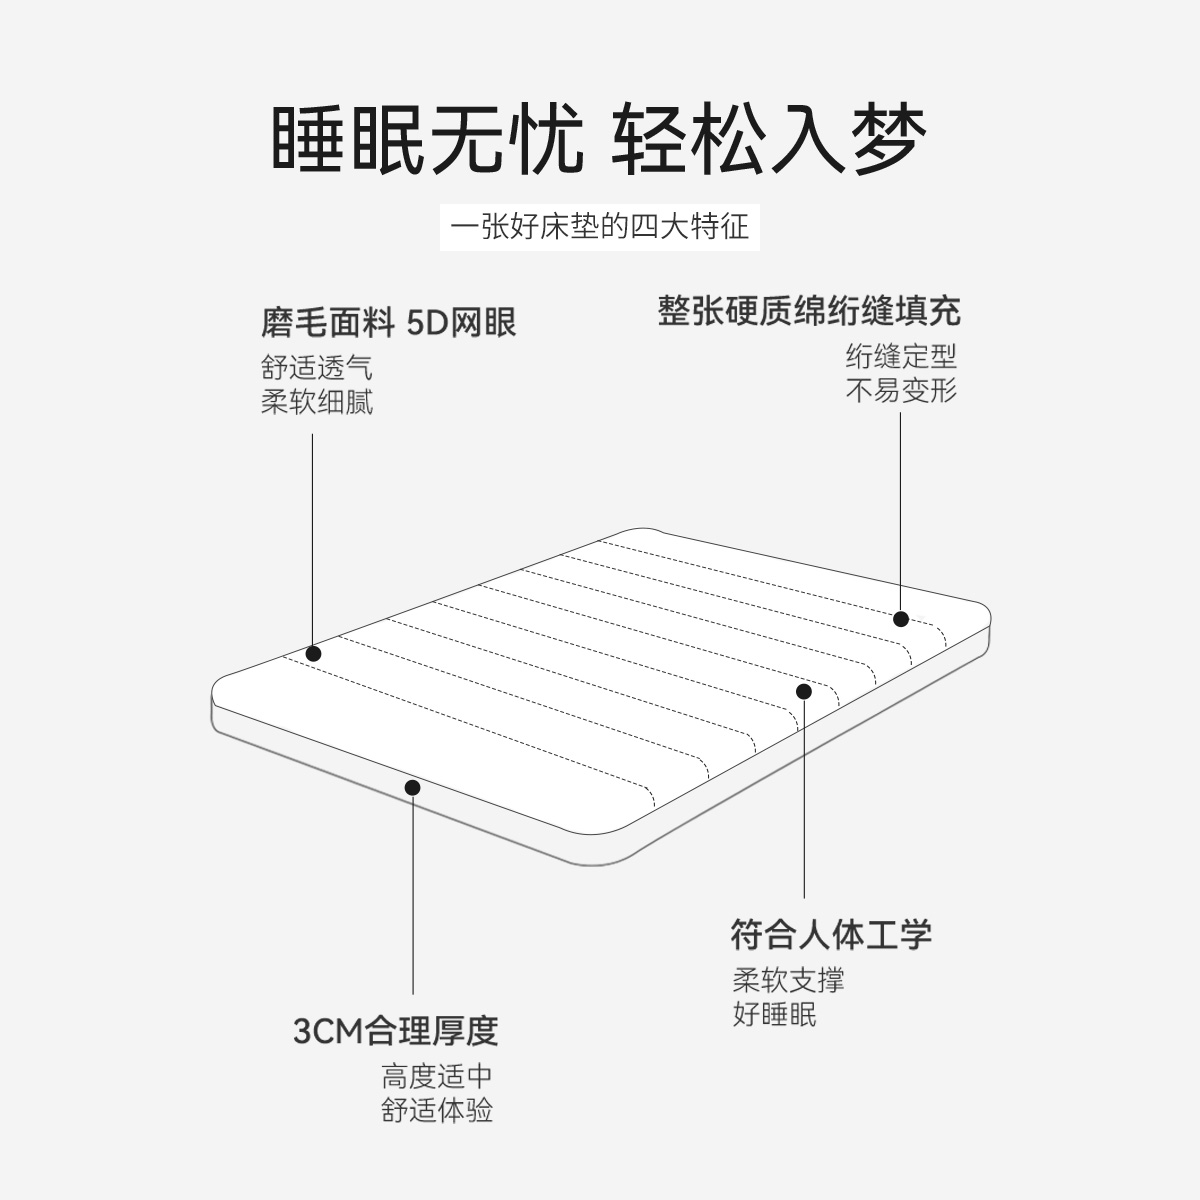 Dohia 多喜爱 加厚床垫家用软垫单双人垫子垫被四季可用海绵软床褥子 67.93元